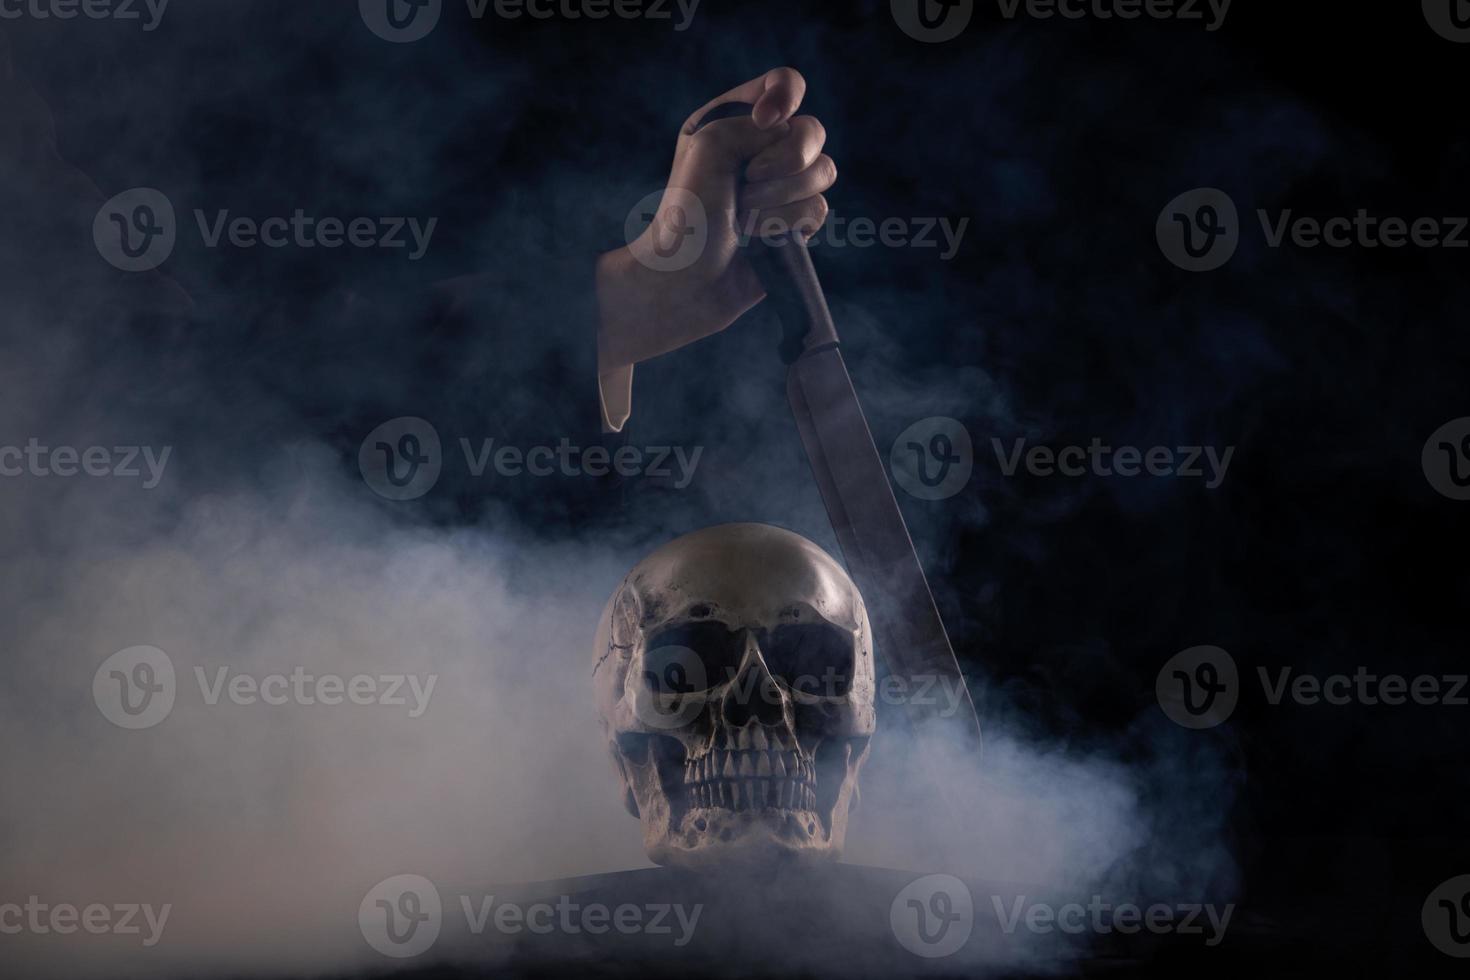 Halloween menschlicher Schädel auf einem alten Holztisch auf schwarzem Hintergrund. Form des Schädelknochens für Todeskopf auf dem Halloween-Festival, das Mördermesser zeigt, tötet totes Urteil, Kopierraum foto